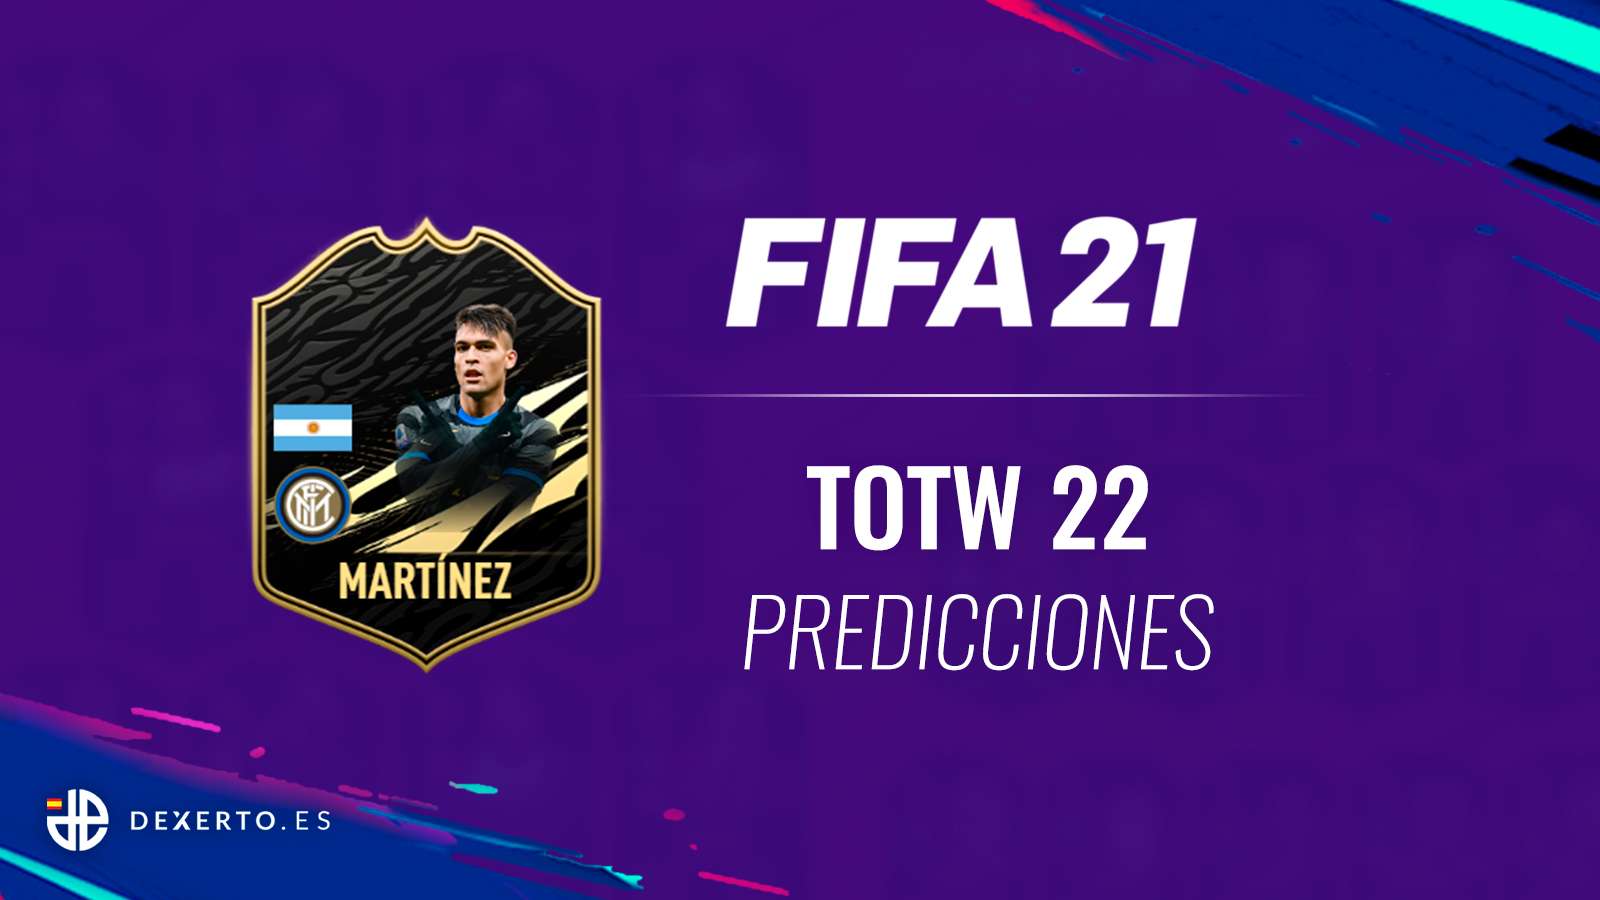 FIFA 21 TOTW 22 predicciones